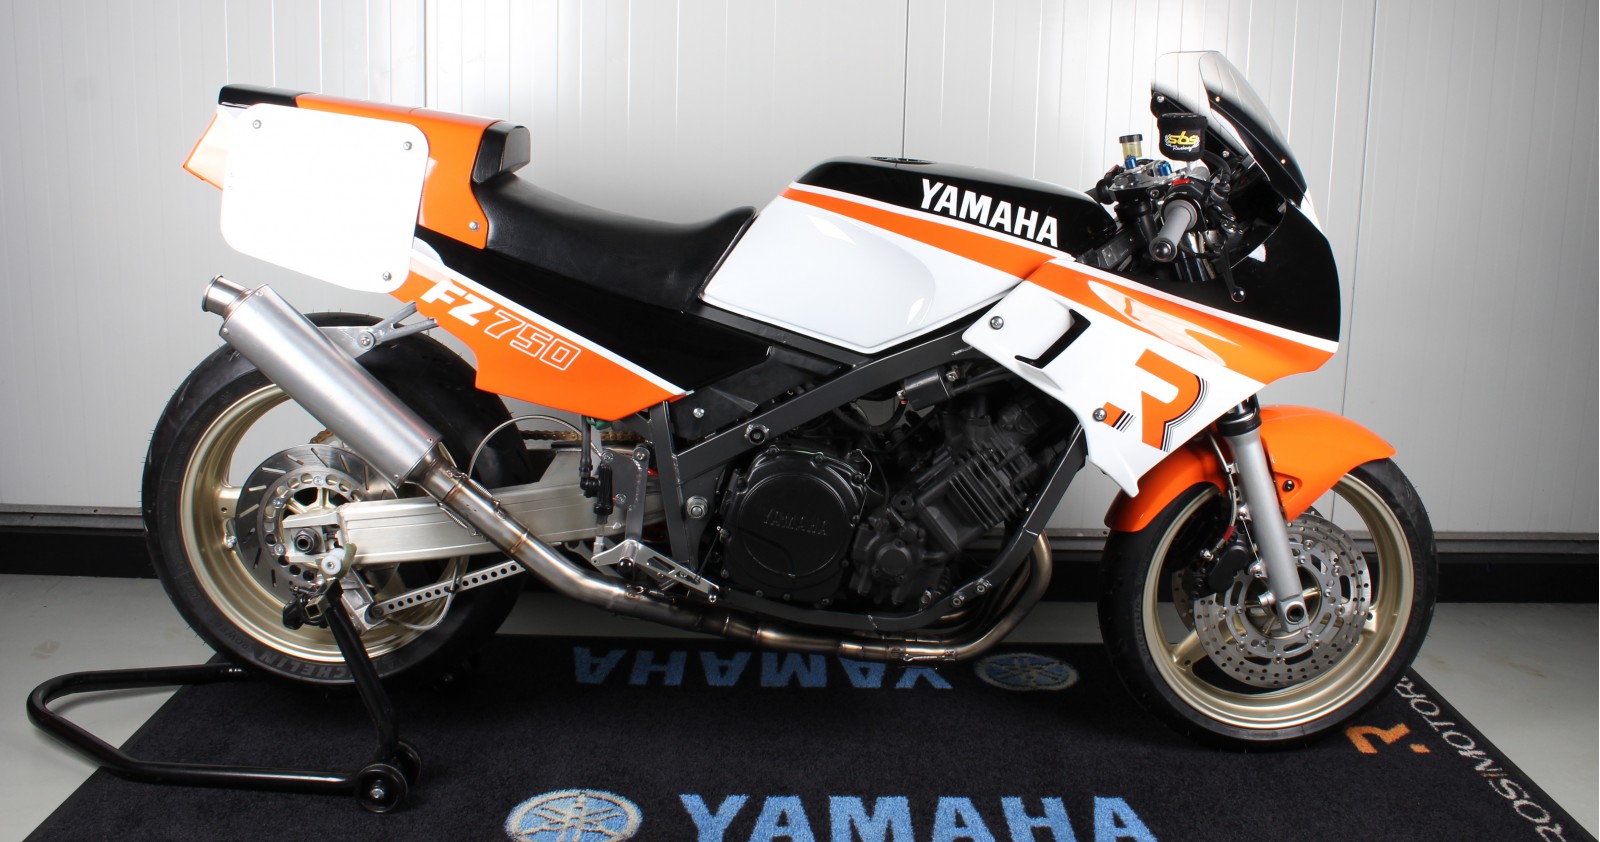 Project Ros Racing; onze Yamaha FZ-750 classic racer is KLAAR!